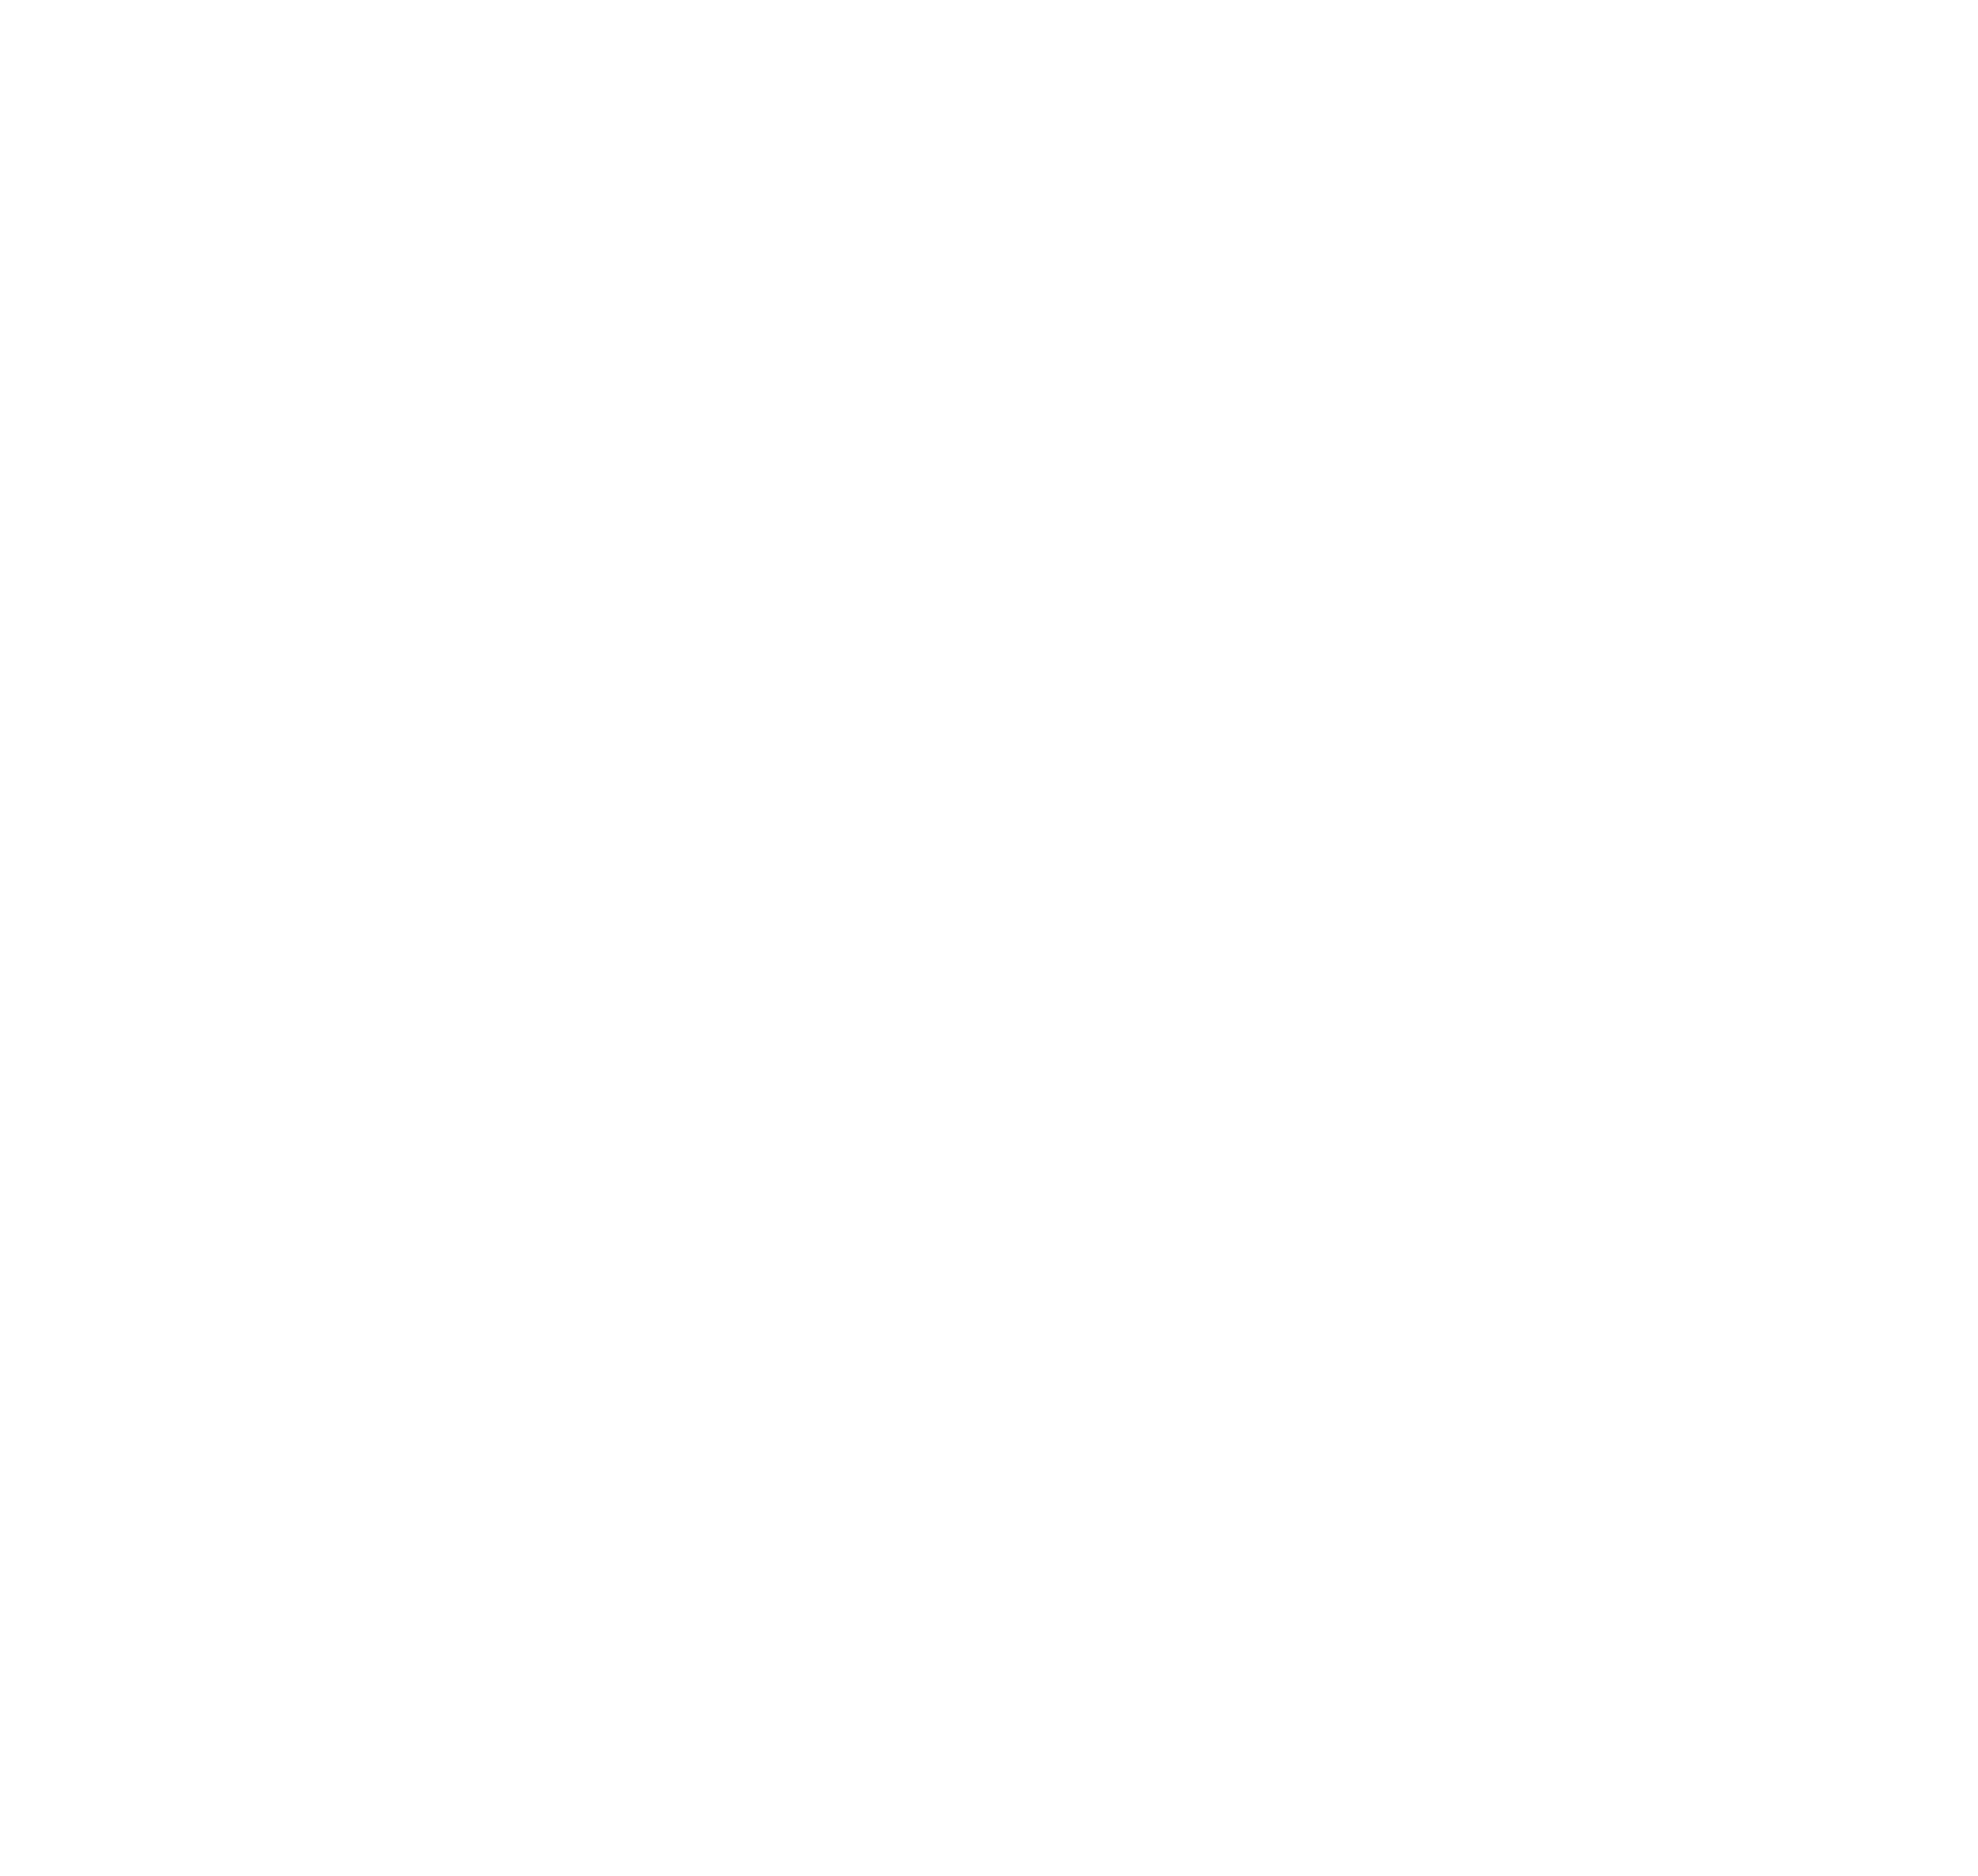 Corner